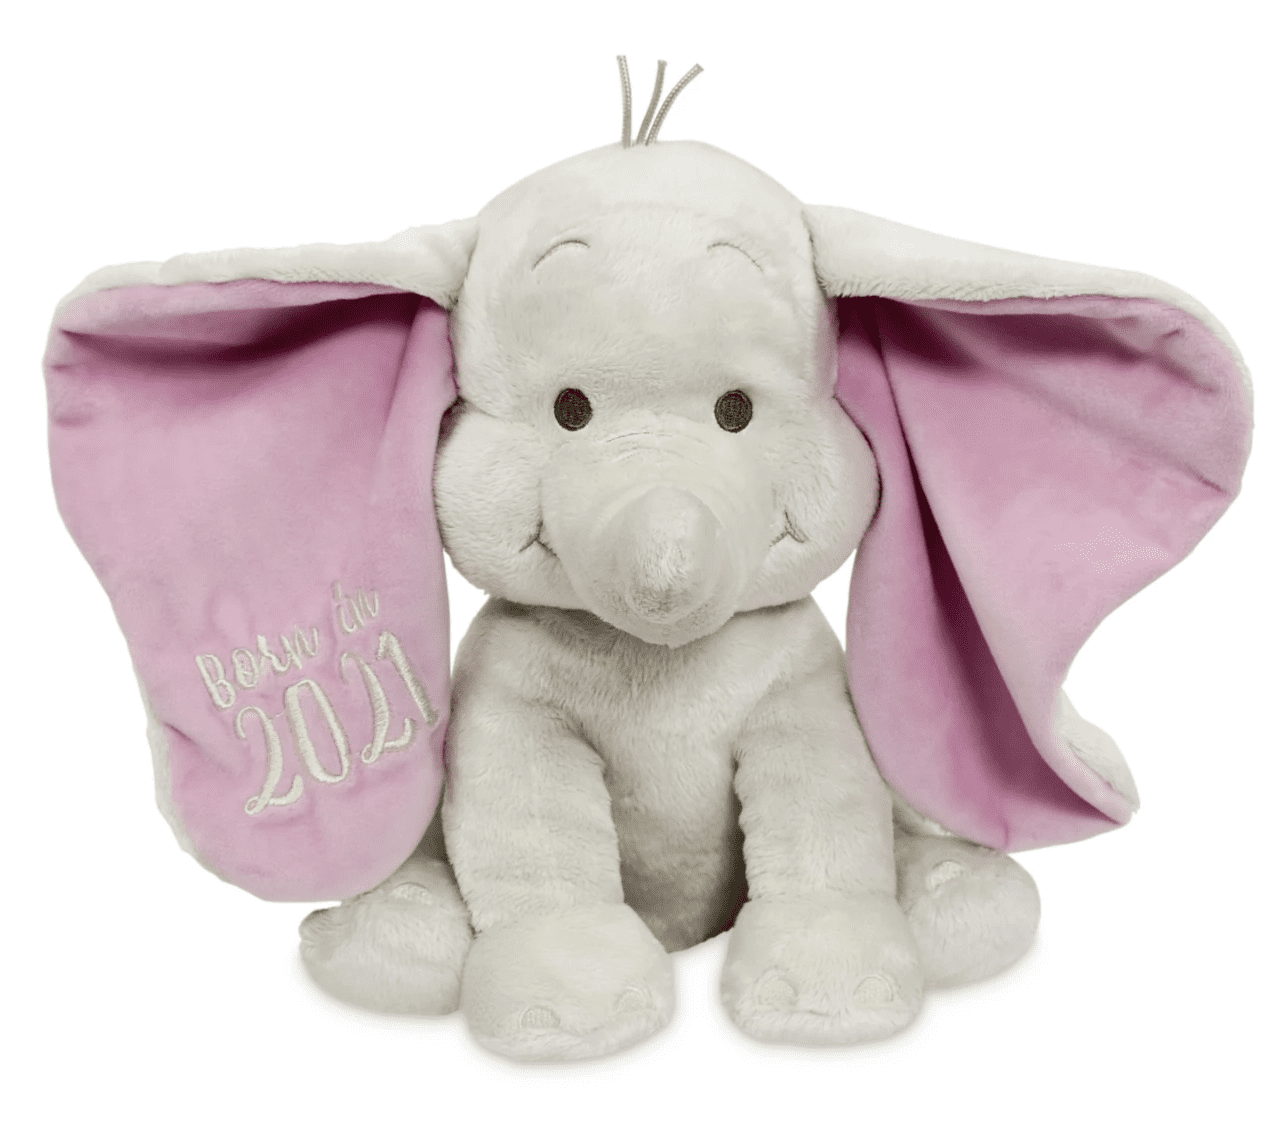 Disney Dumbo Elephant Plush Doll Sleeping PASTEL STYLE new